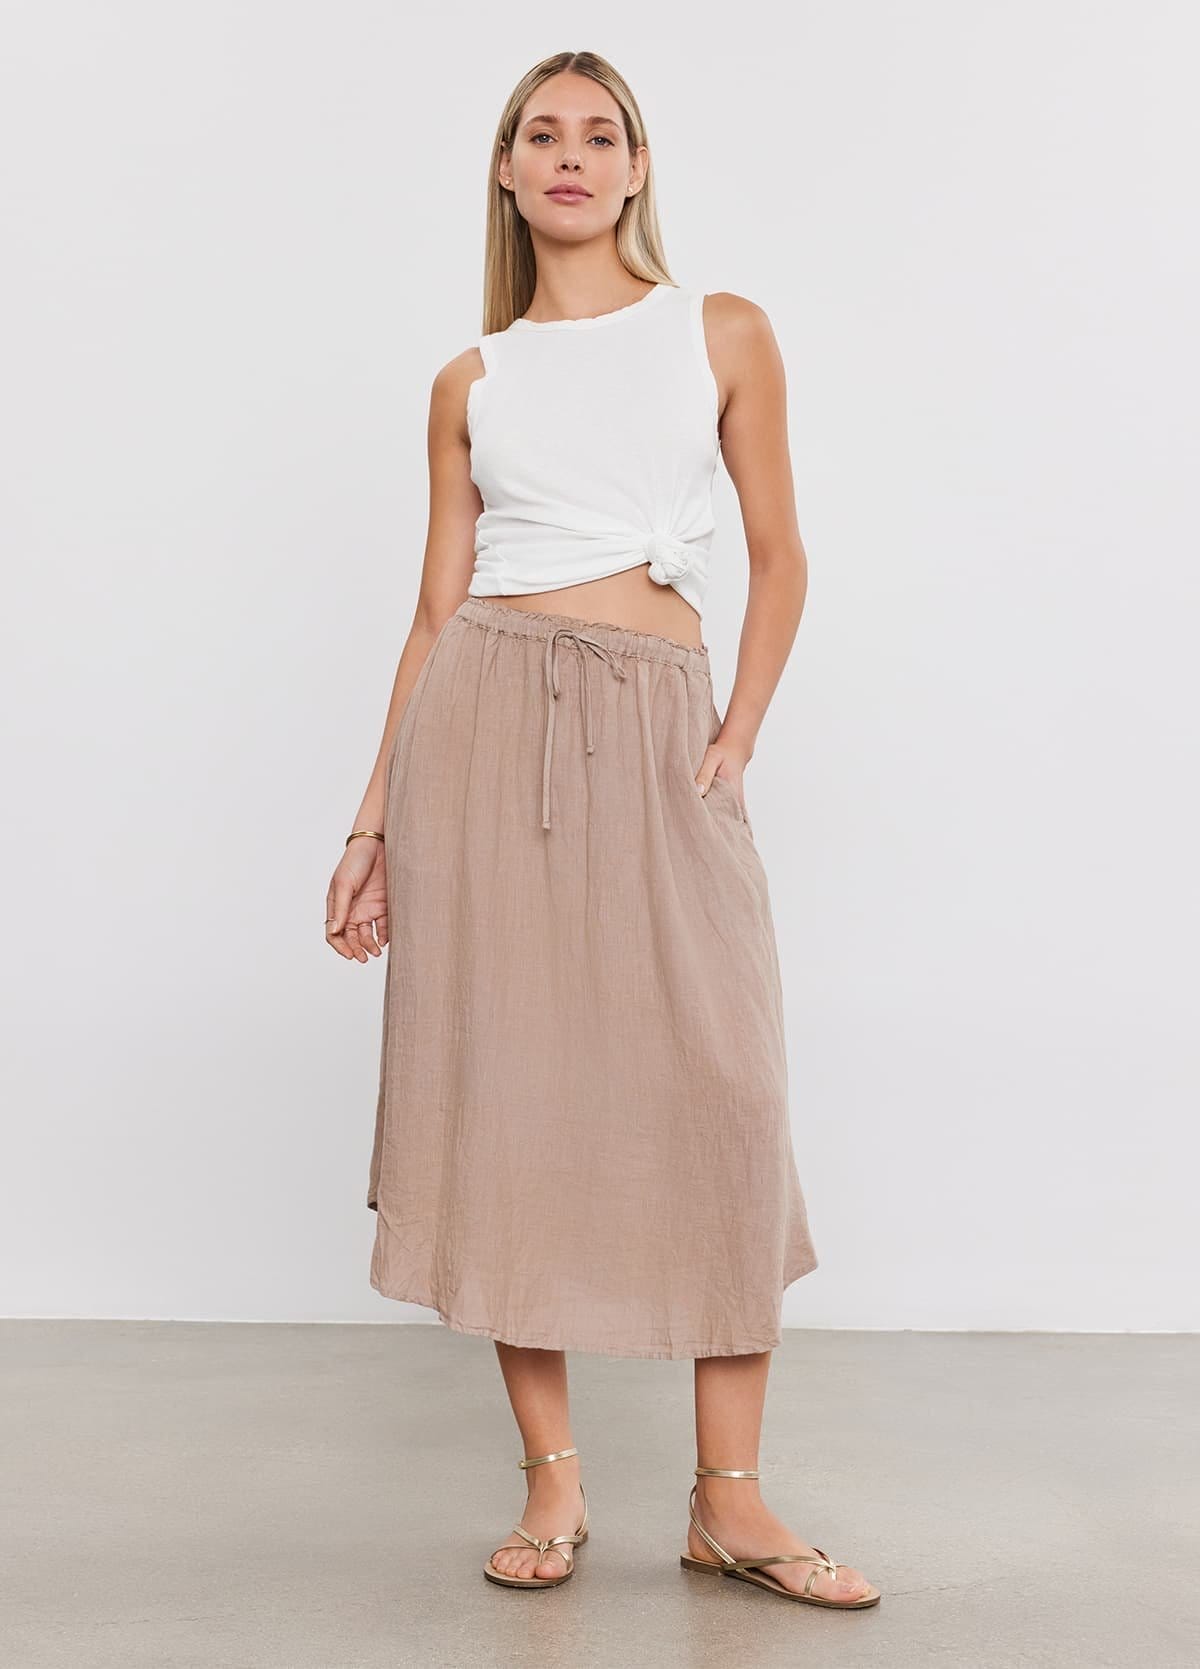 Model wearing the Nemy Linen Skirt